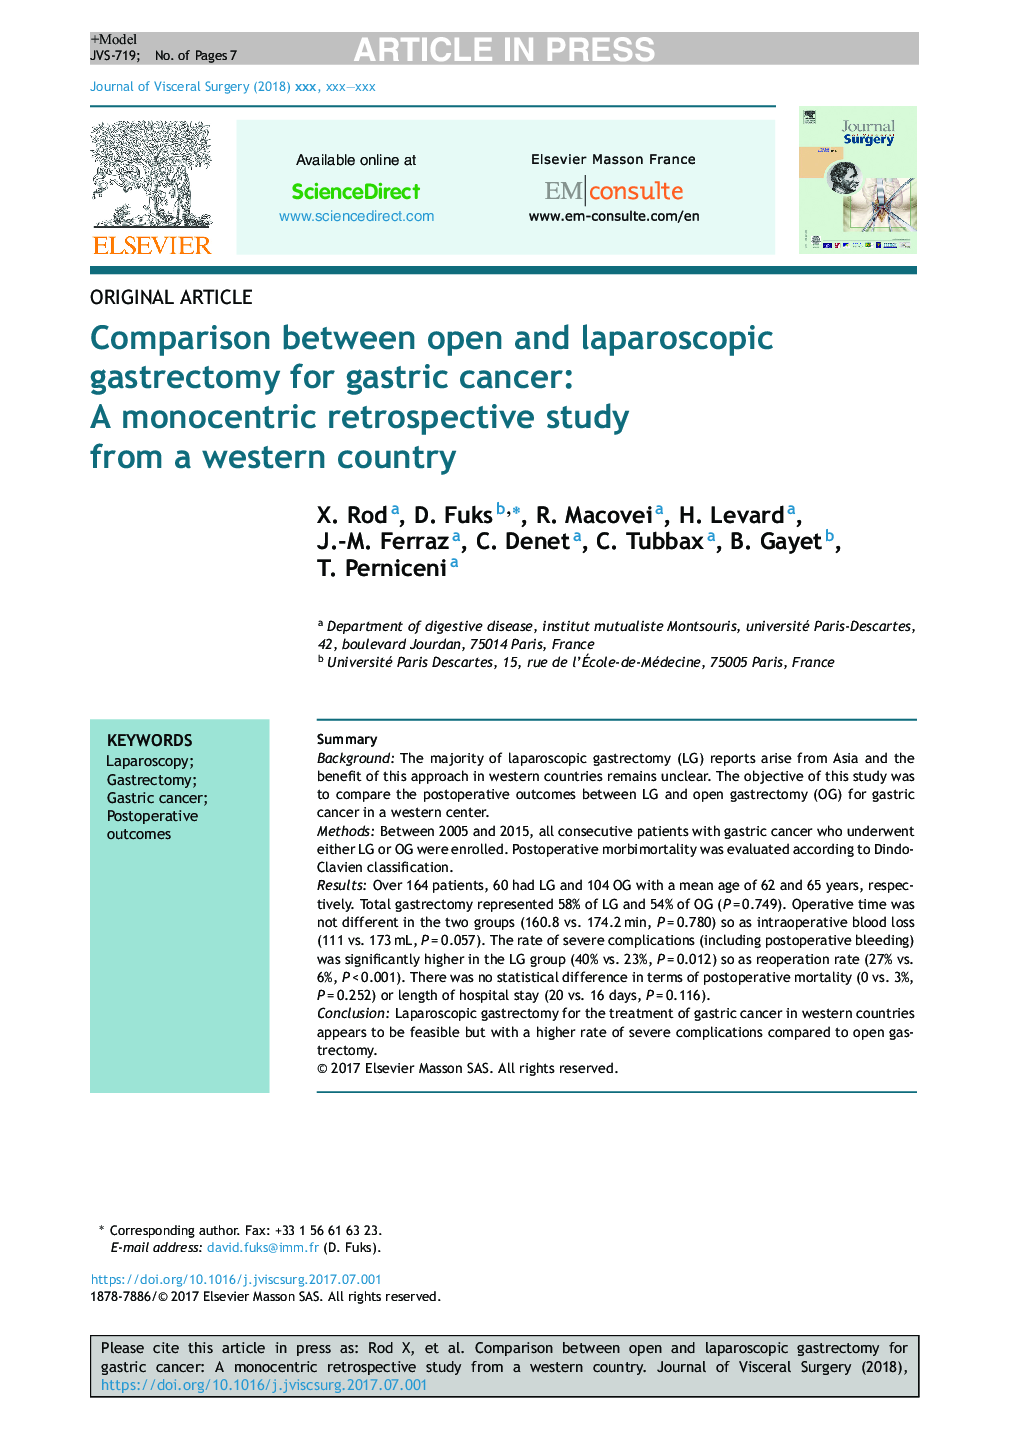 مقایسه بین گاسترکتومی باز و لاپاراسکوپی برای سرطان معده: یک مطالعه گذشته نگر تک چشمی از یک کشور غربی 